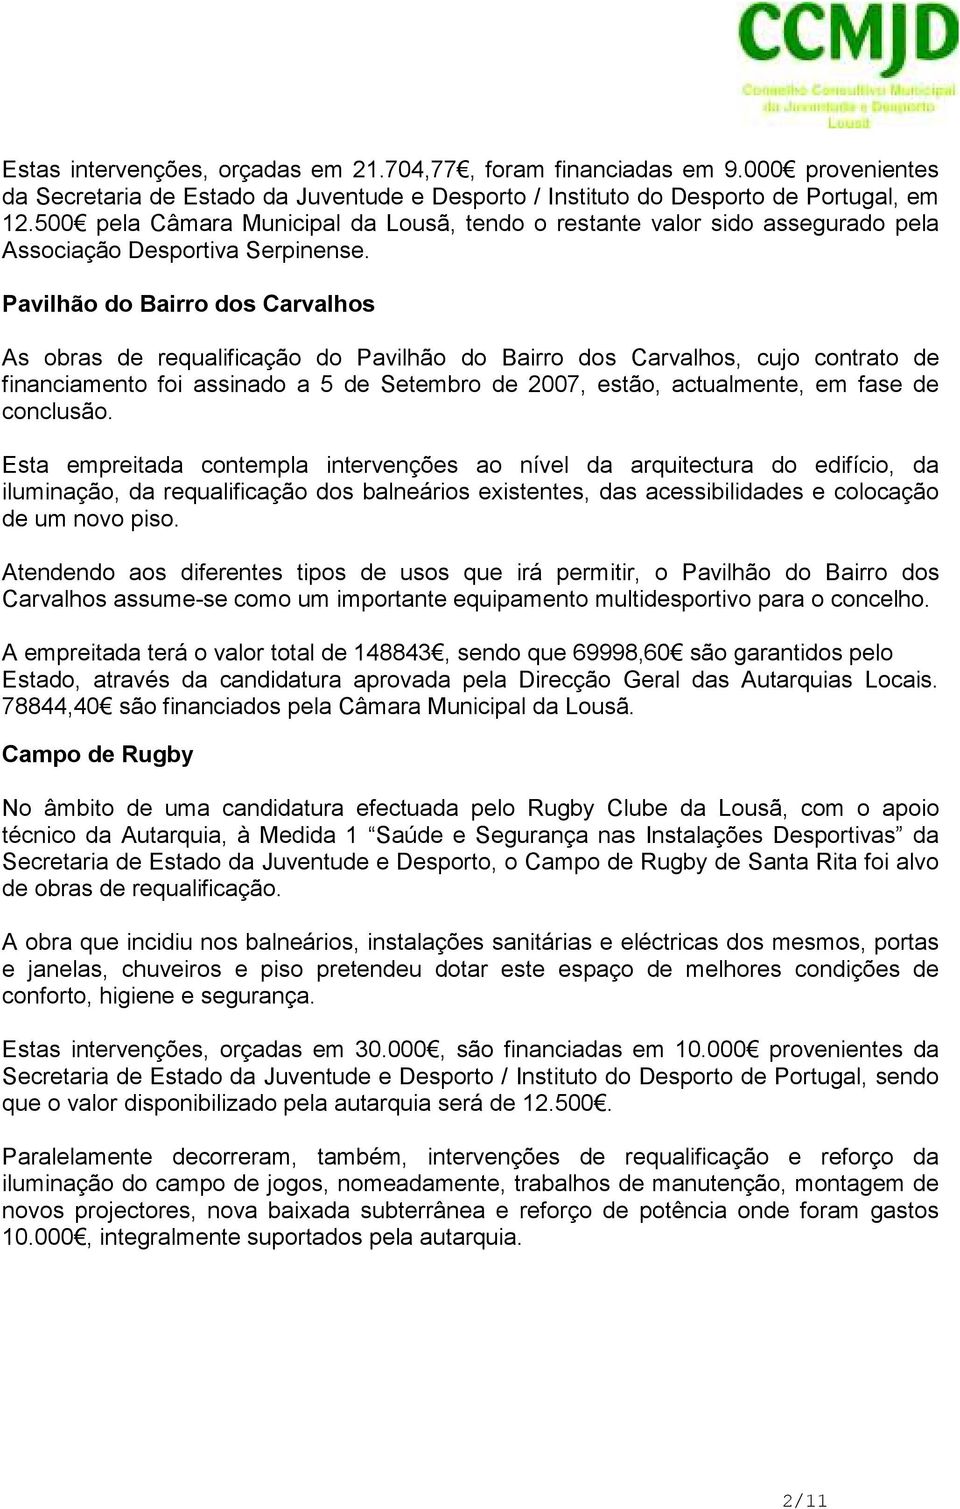 Pavilhão do Bairro dos Carvalhos As obras de requalificação do Pavilhão do Bairro dos Carvalhos, cujo contrato de financiamento foi assinado a 5 de Setembro de 2007, estão, actualmente, em fase de